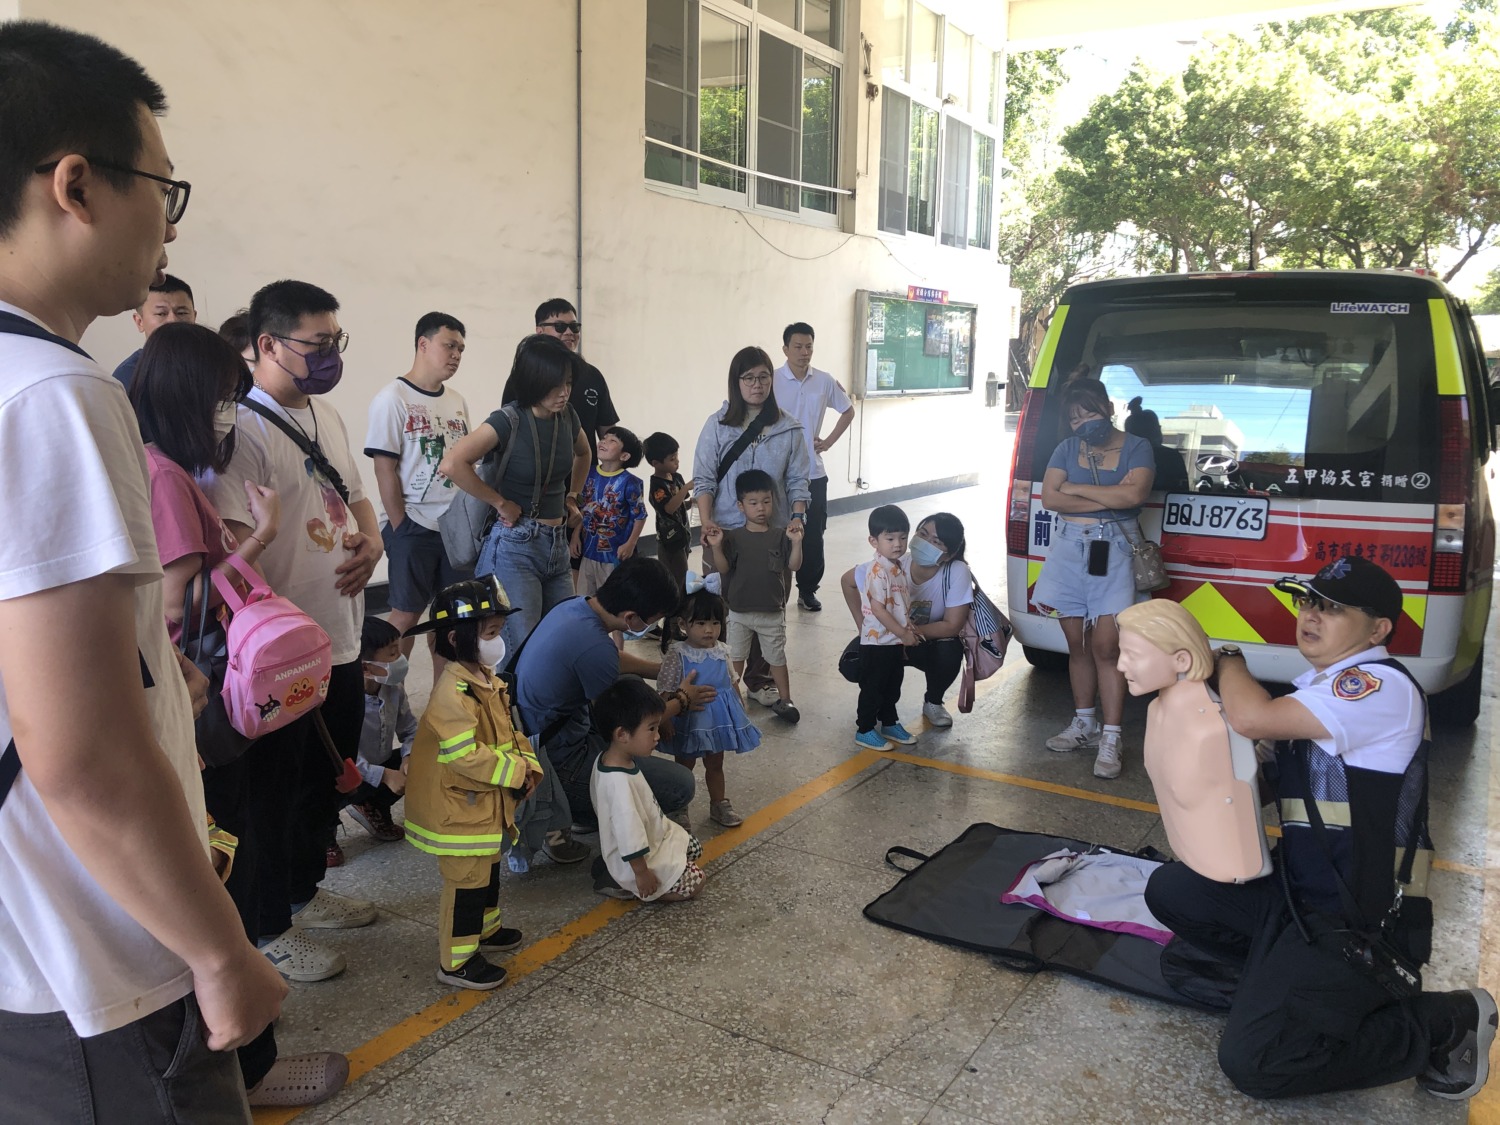 動態與靜態互動教學   前鎮消防隊舉辦親子消防體驗活動